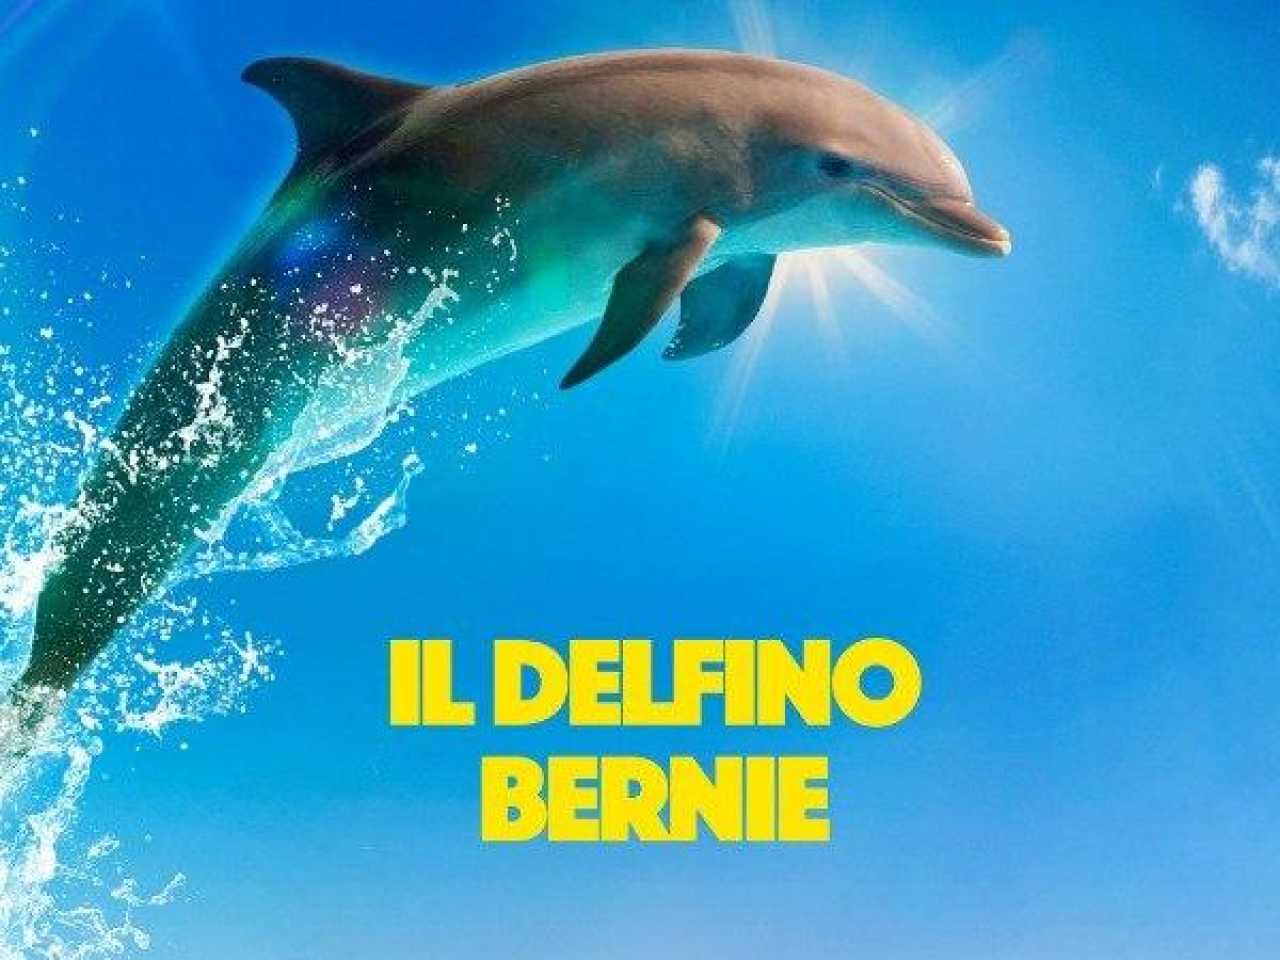 Bernie Il Delfino